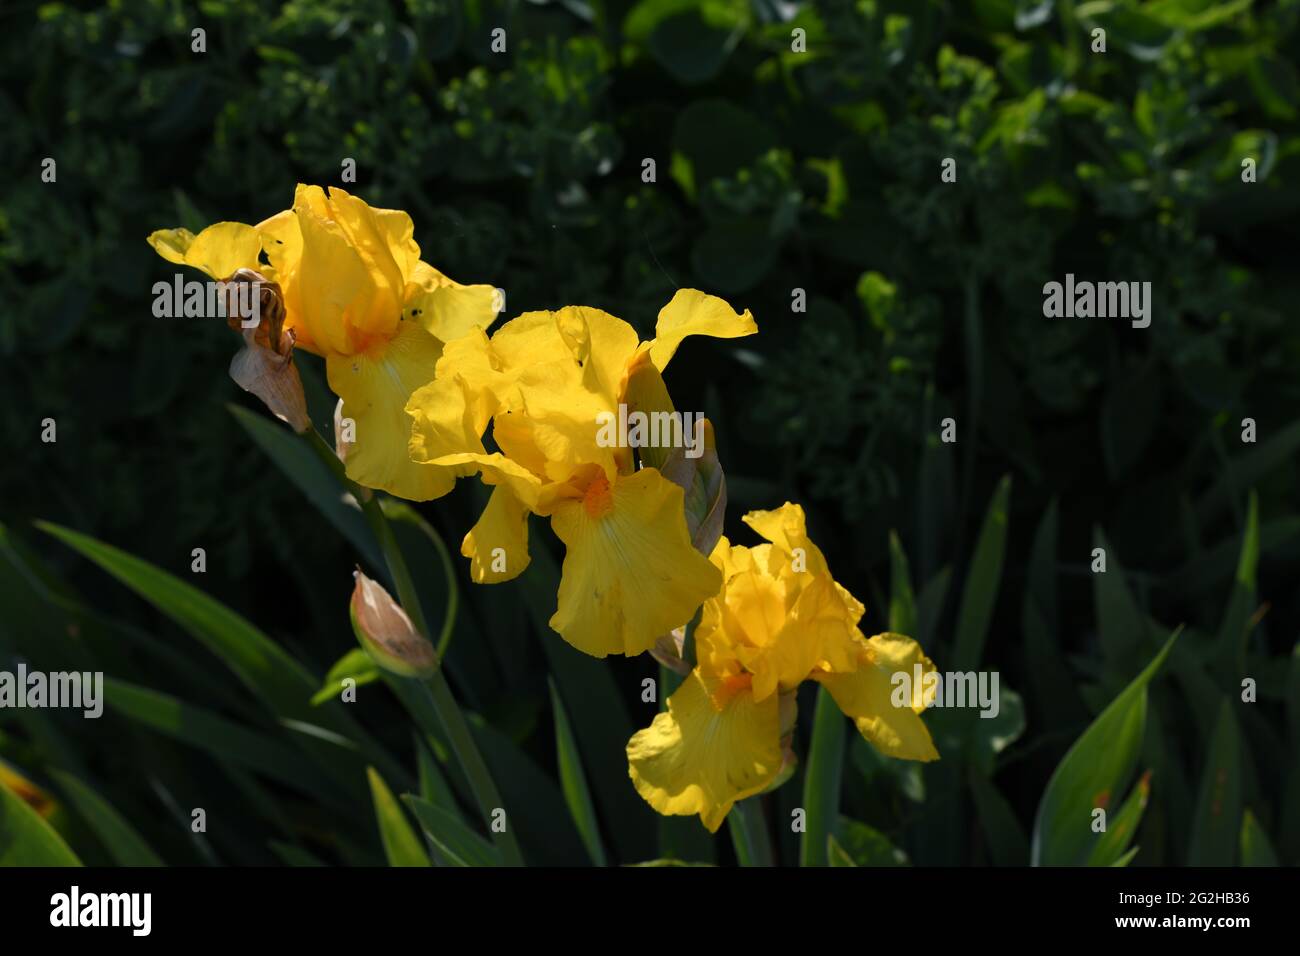 3 herrlich blühende gelbe Sumpf-Schwertlilien (Iris pseudacorus) im Blumenbeet Stock Photo